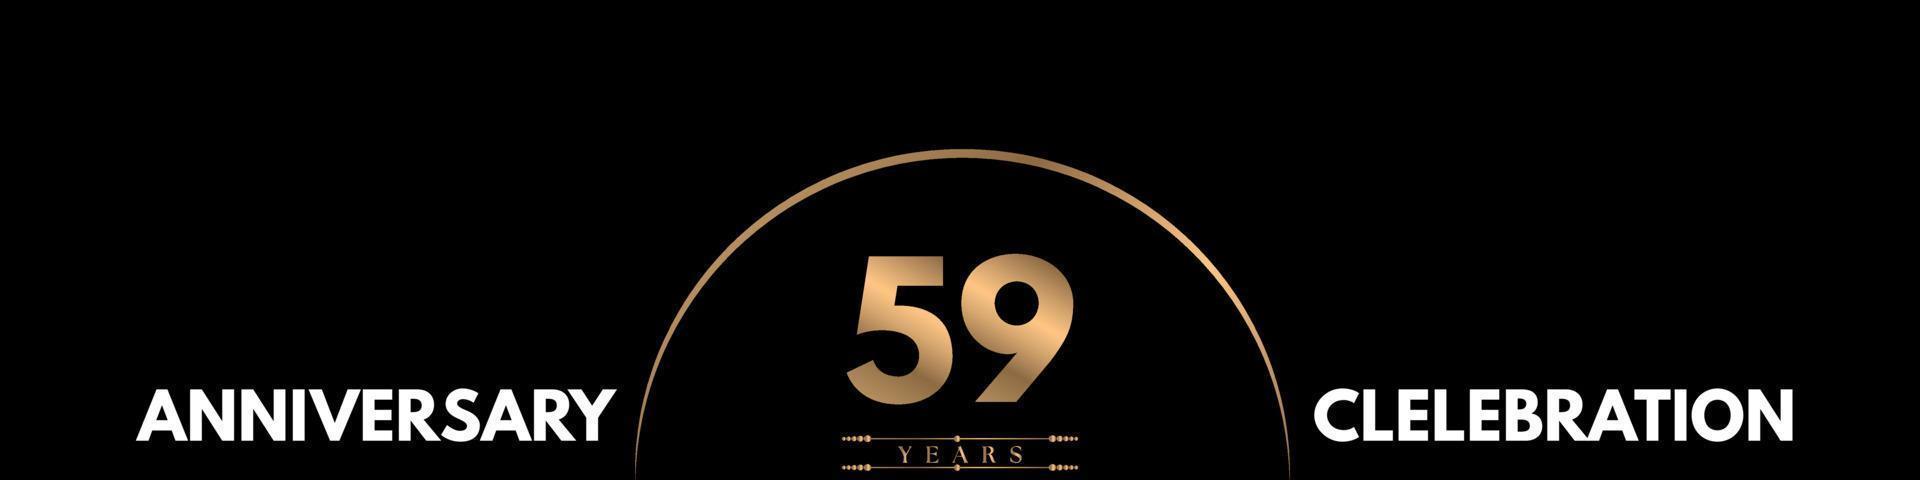 Celebrazione dell'anniversario di 59 anni con numero elegante isolato su sfondo nero. disegno vettoriale per biglietto di auguri, festa di compleanno, matrimonio, festa evento, cerimonia, biglietto d'invito.